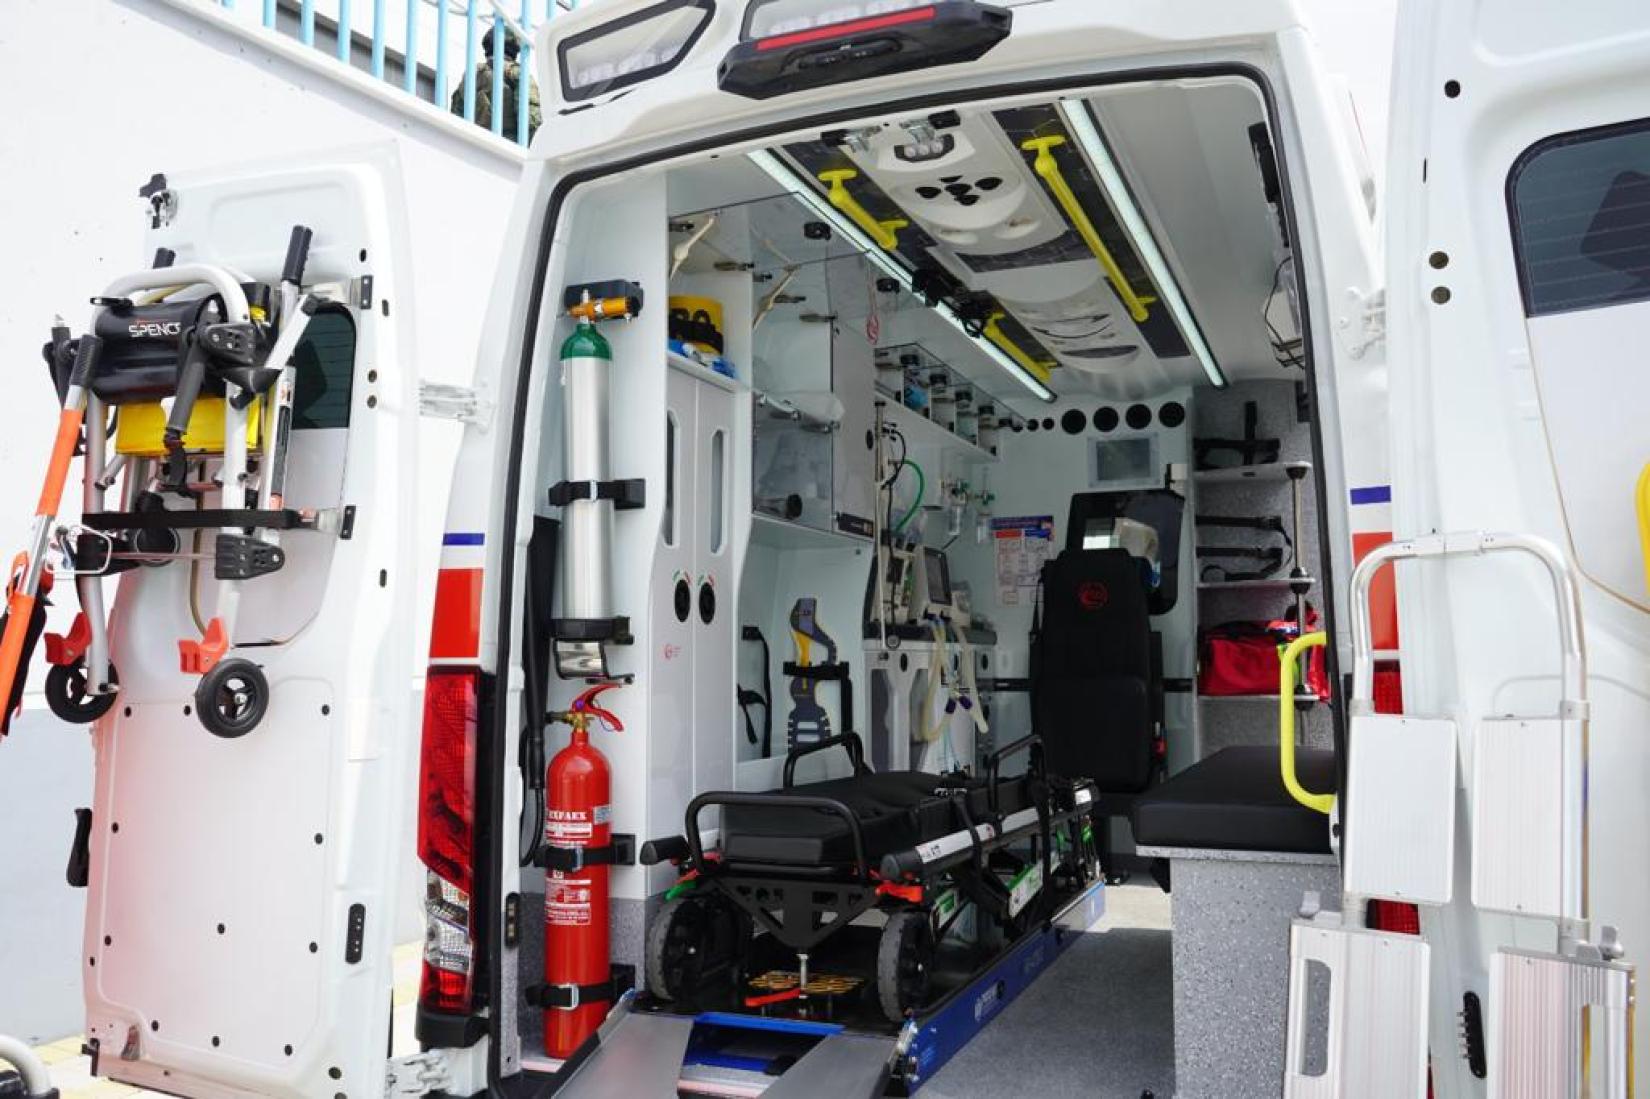 Interior de una de las ambulancias entregadas al Ministerio de Salud Pública. Se puede apreciar a la ambulancia con la puerta abierta, y dentro de ella una camilla, un extintor y equipamiento médico moderno.